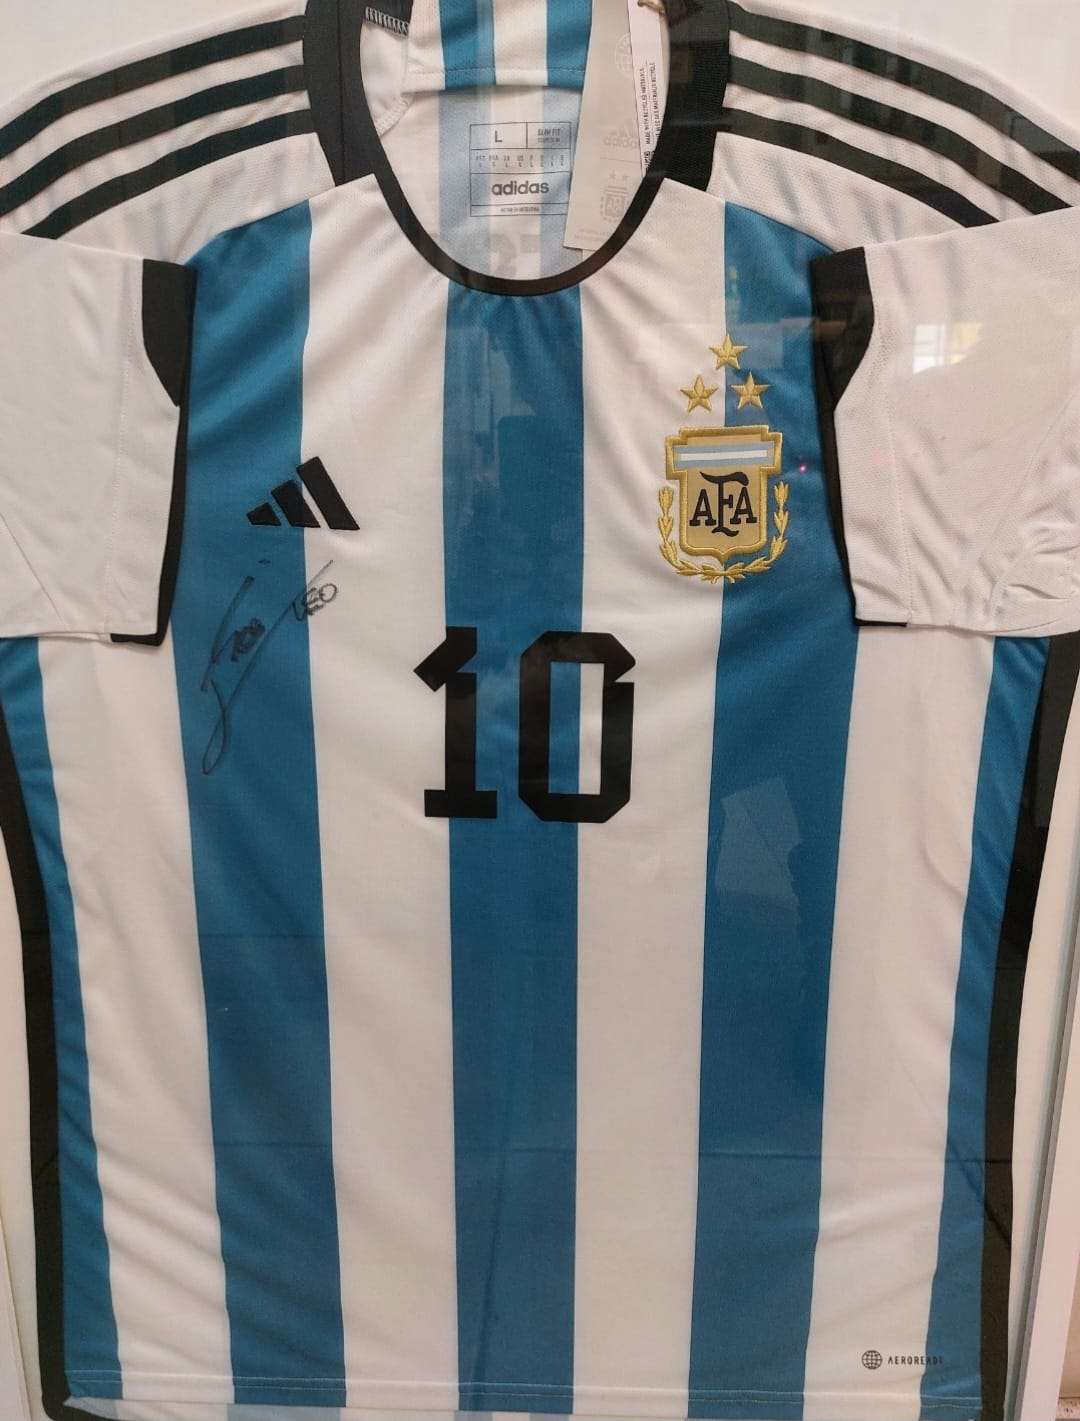 Encuentro de escelitas Mitre Sorteo camiseta Messi - 1